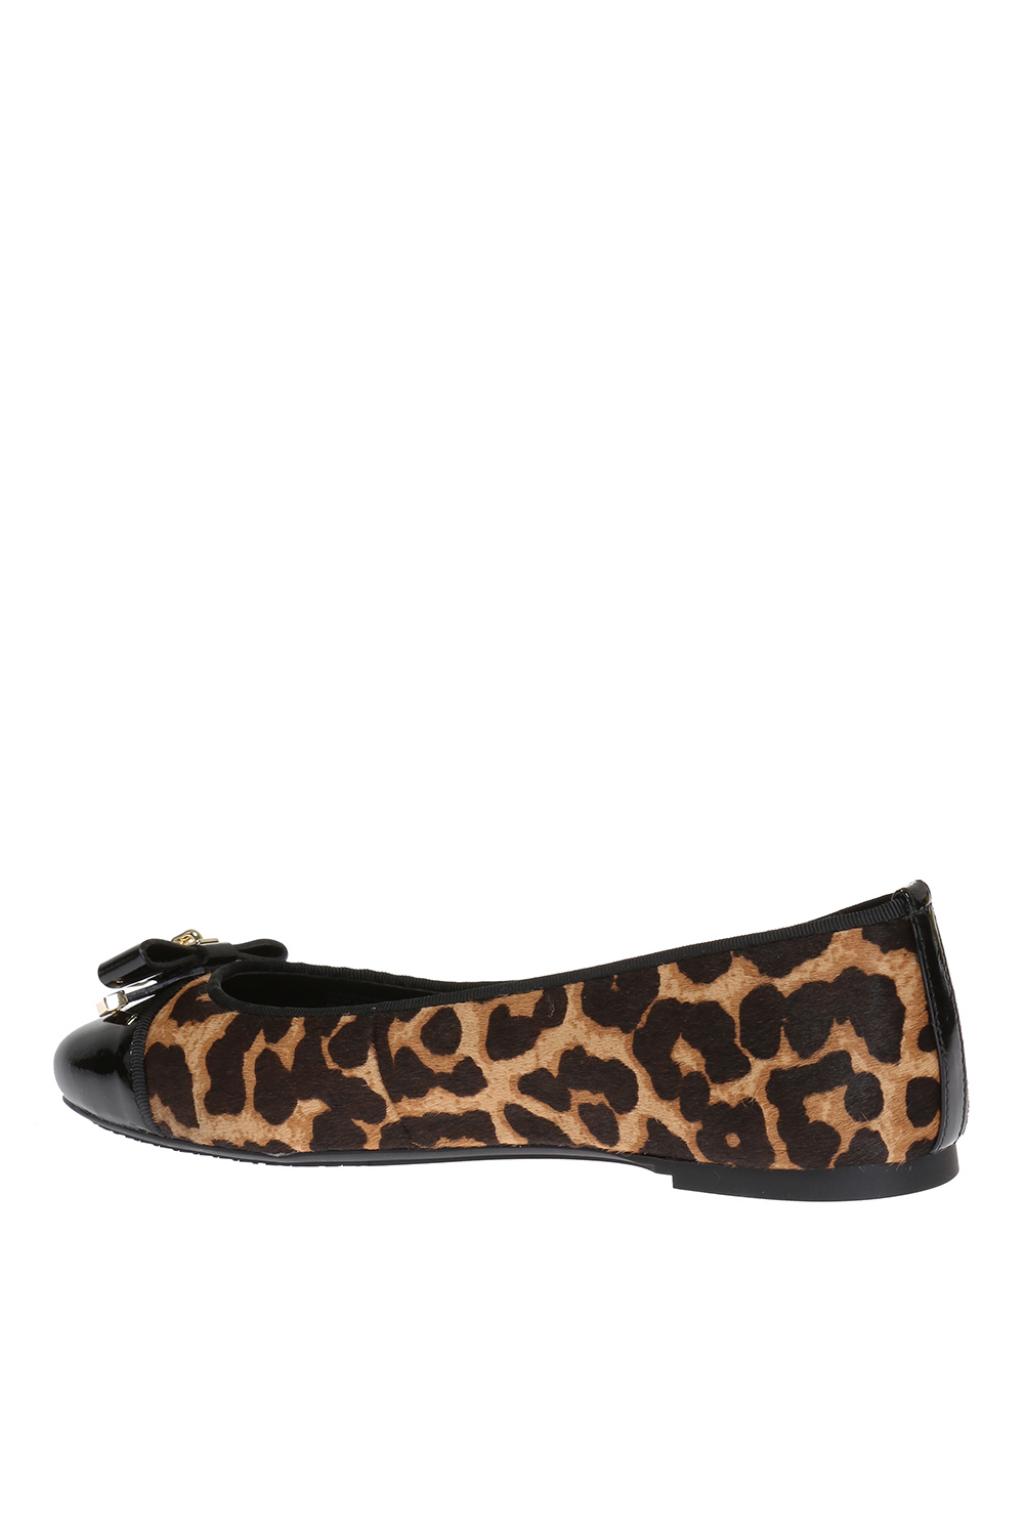 michael kors leopard print shoes